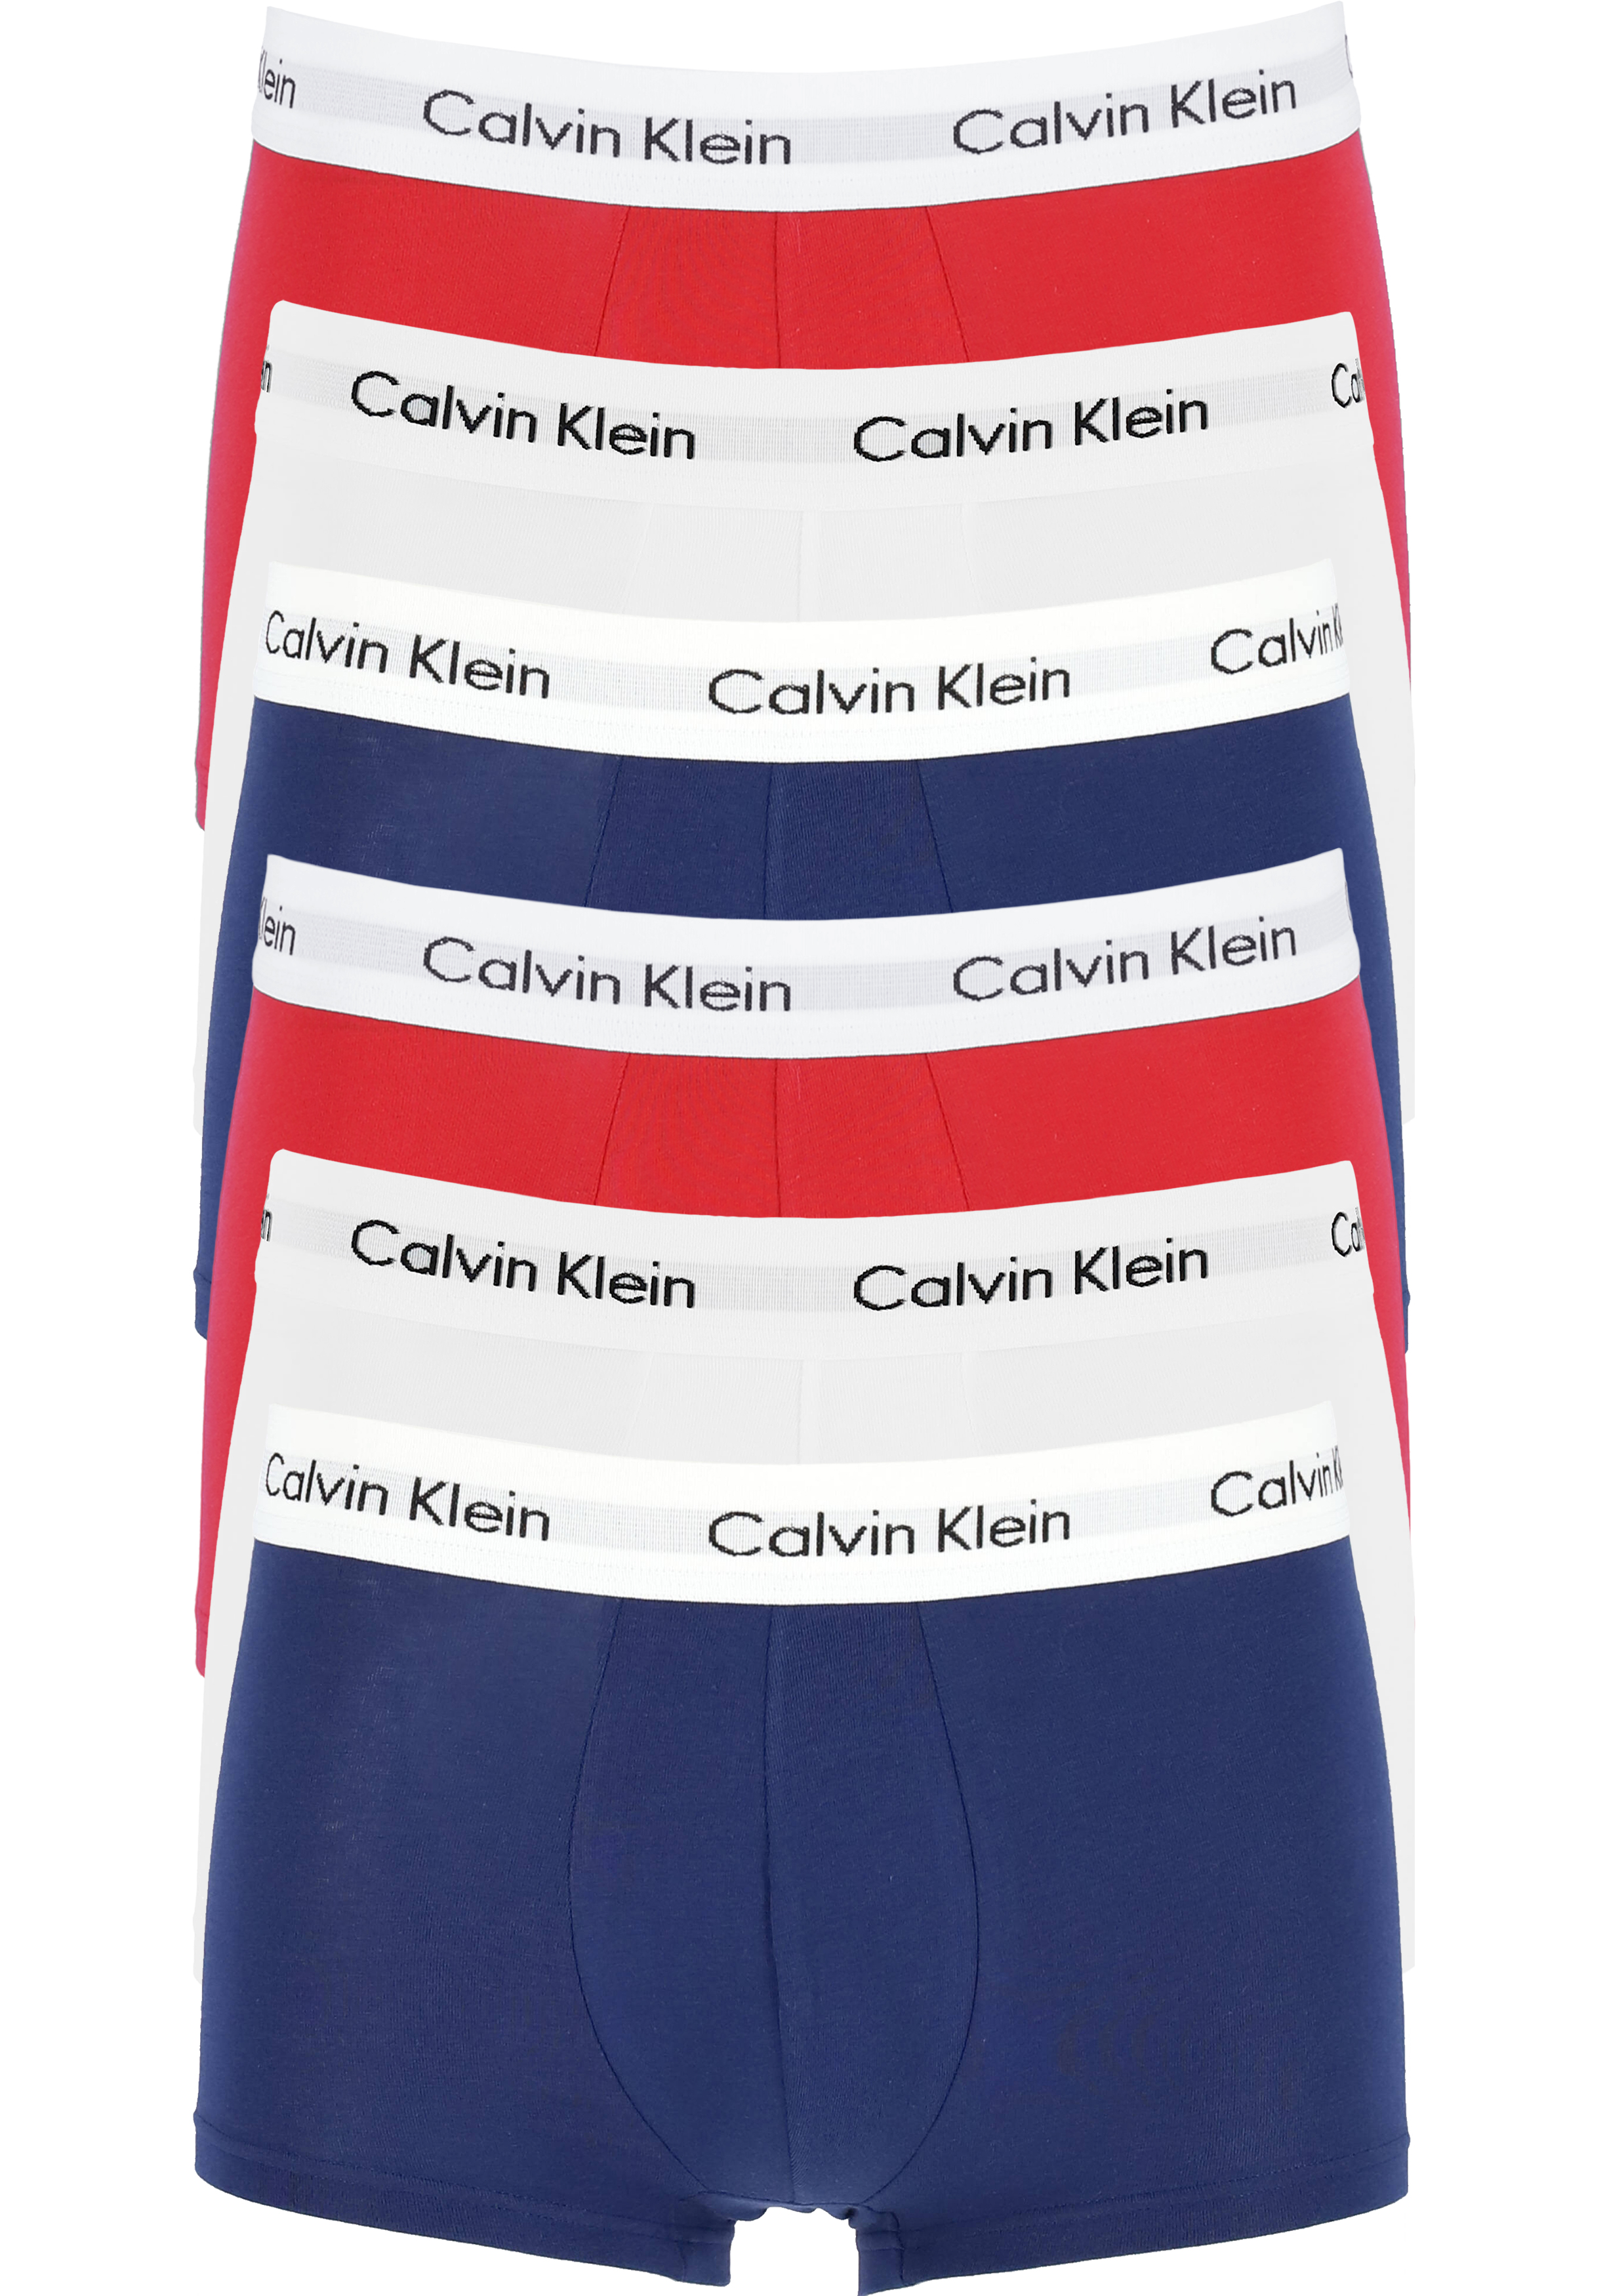 Actie 6-pack: Calvin Klein low rise trunks, lage heren boxers kort,... -  Nieuwe voorjaarscollectie